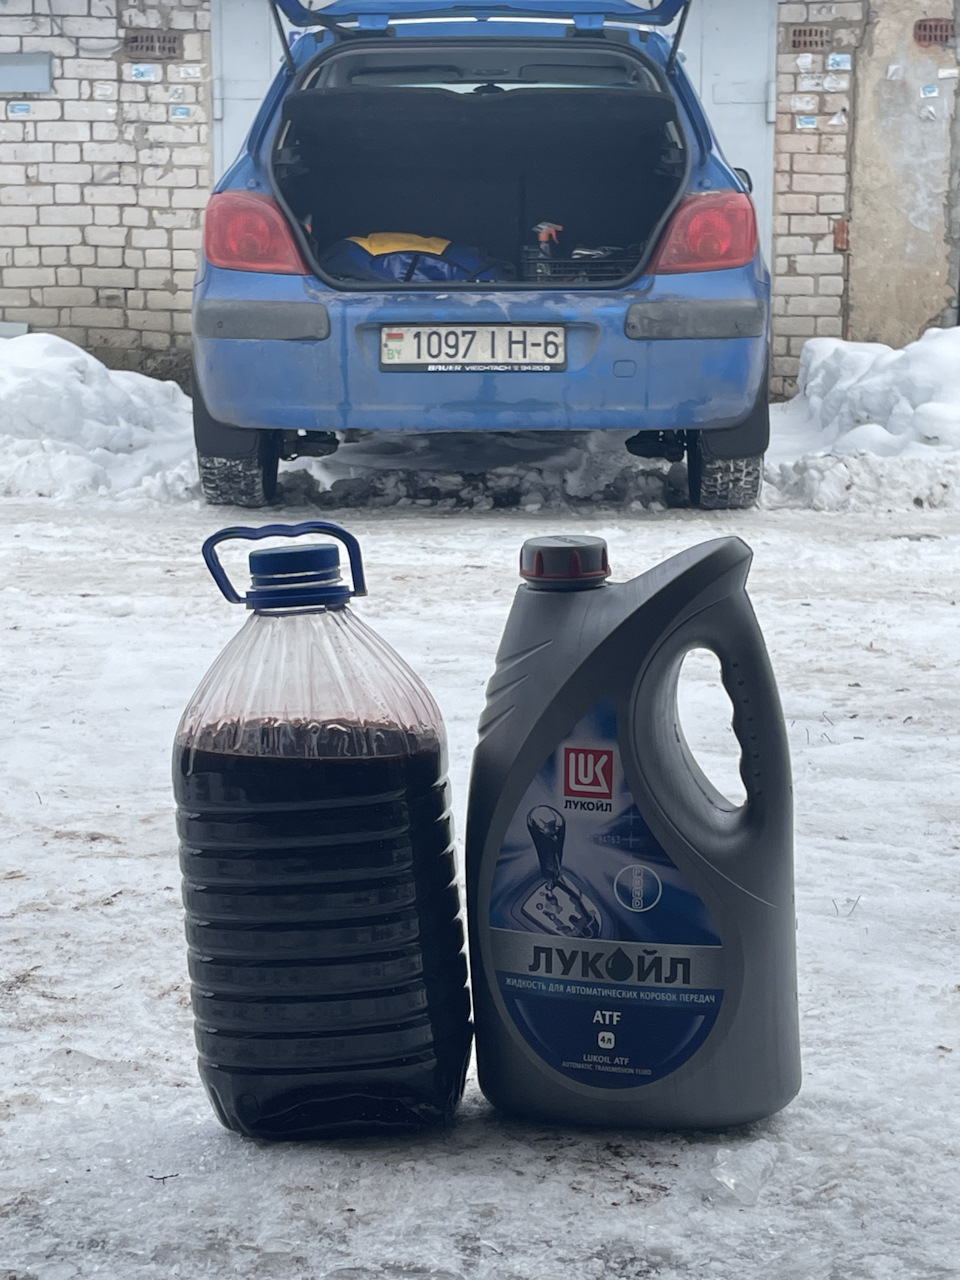 Замена масла в коробке АКПП Peugeot , цены на услуги автосервиса в Москве